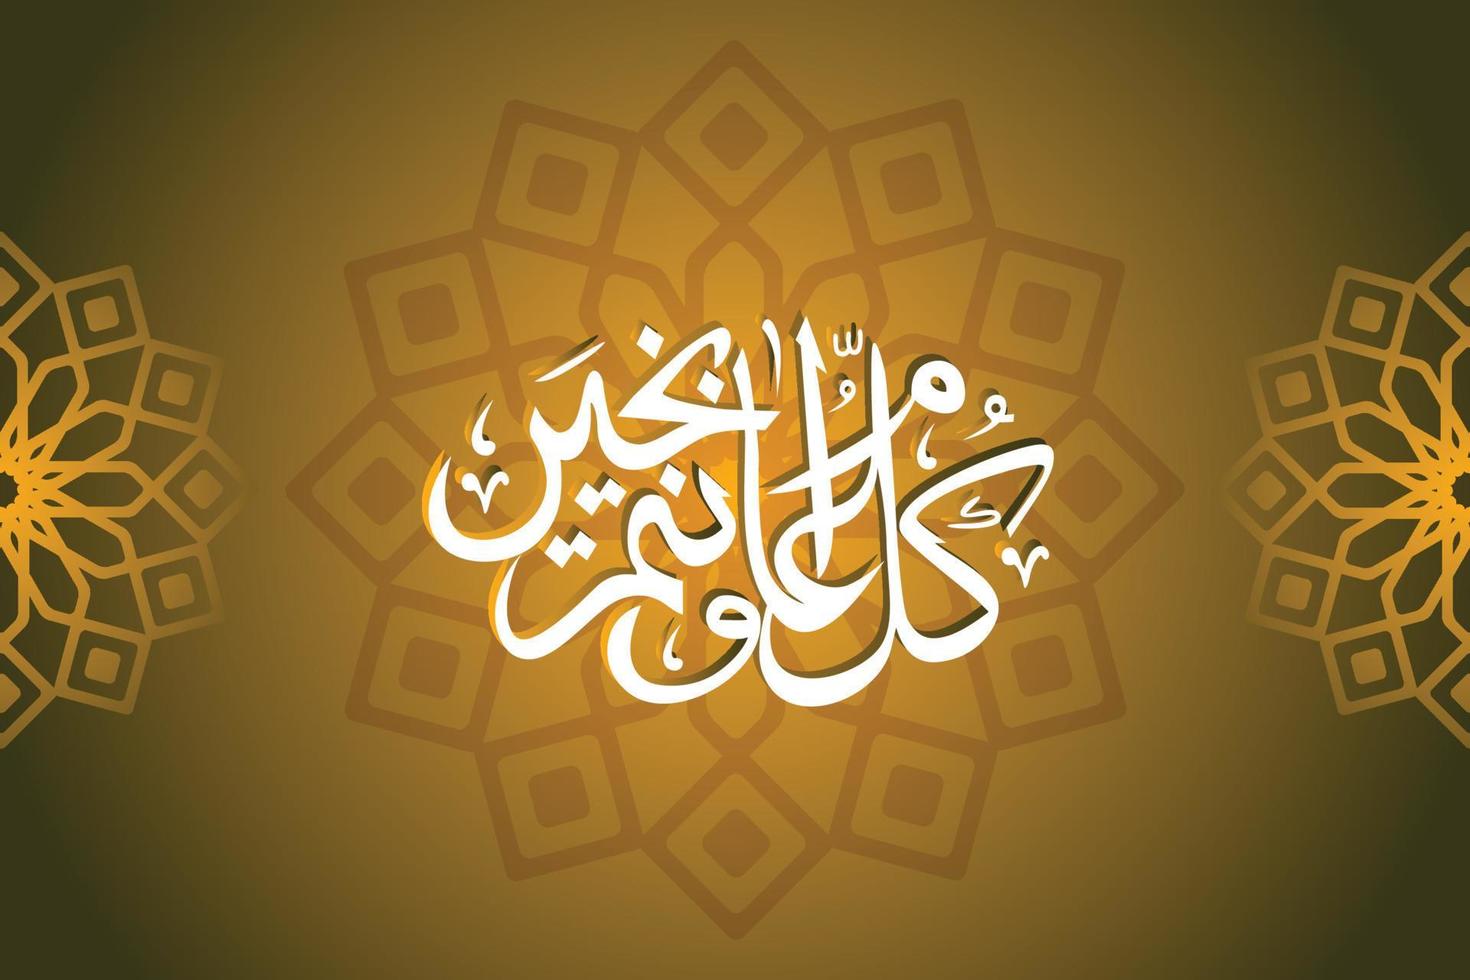 bannière d'illustration vectorielle eid mubarak et publication sur les réseaux sociaux vecteur